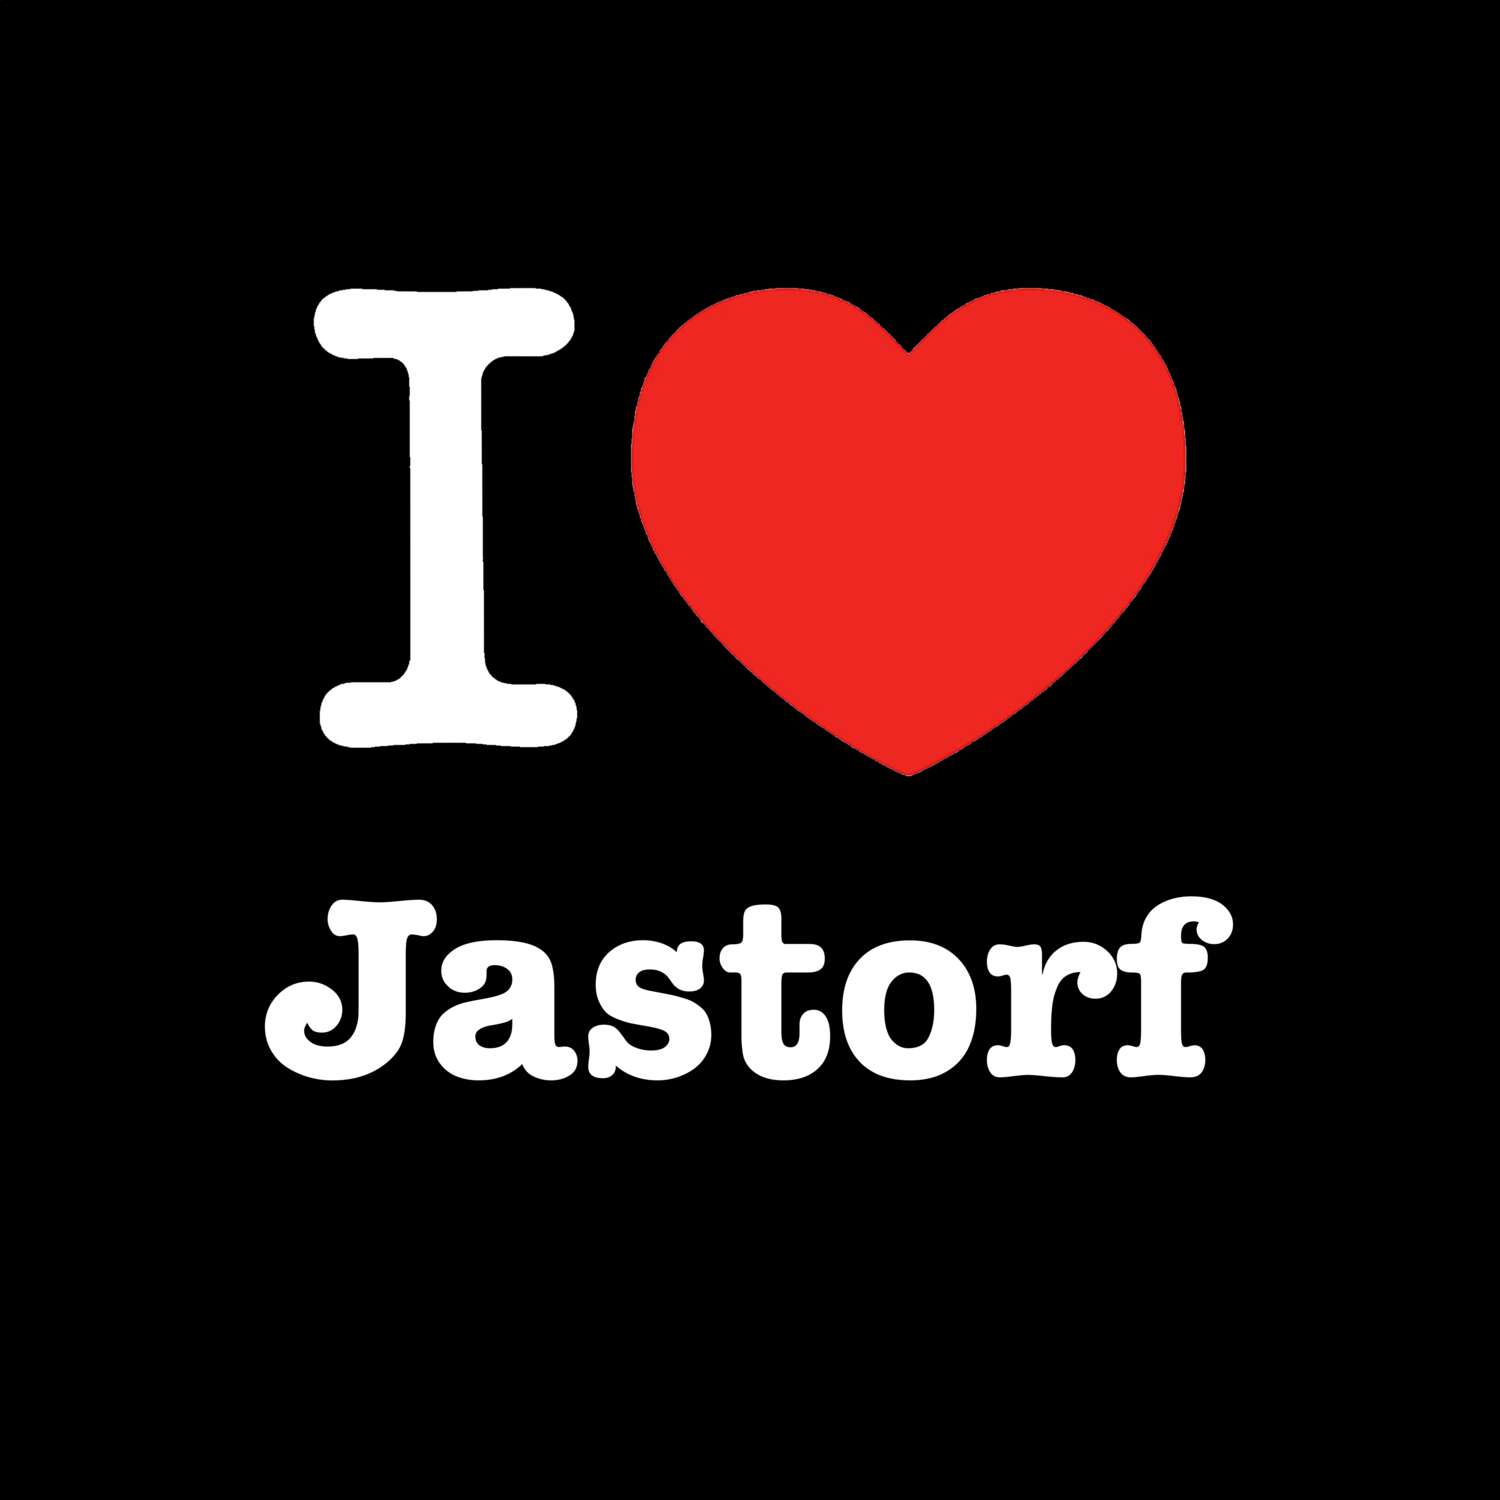 Jastorf T-Shirt »I love«